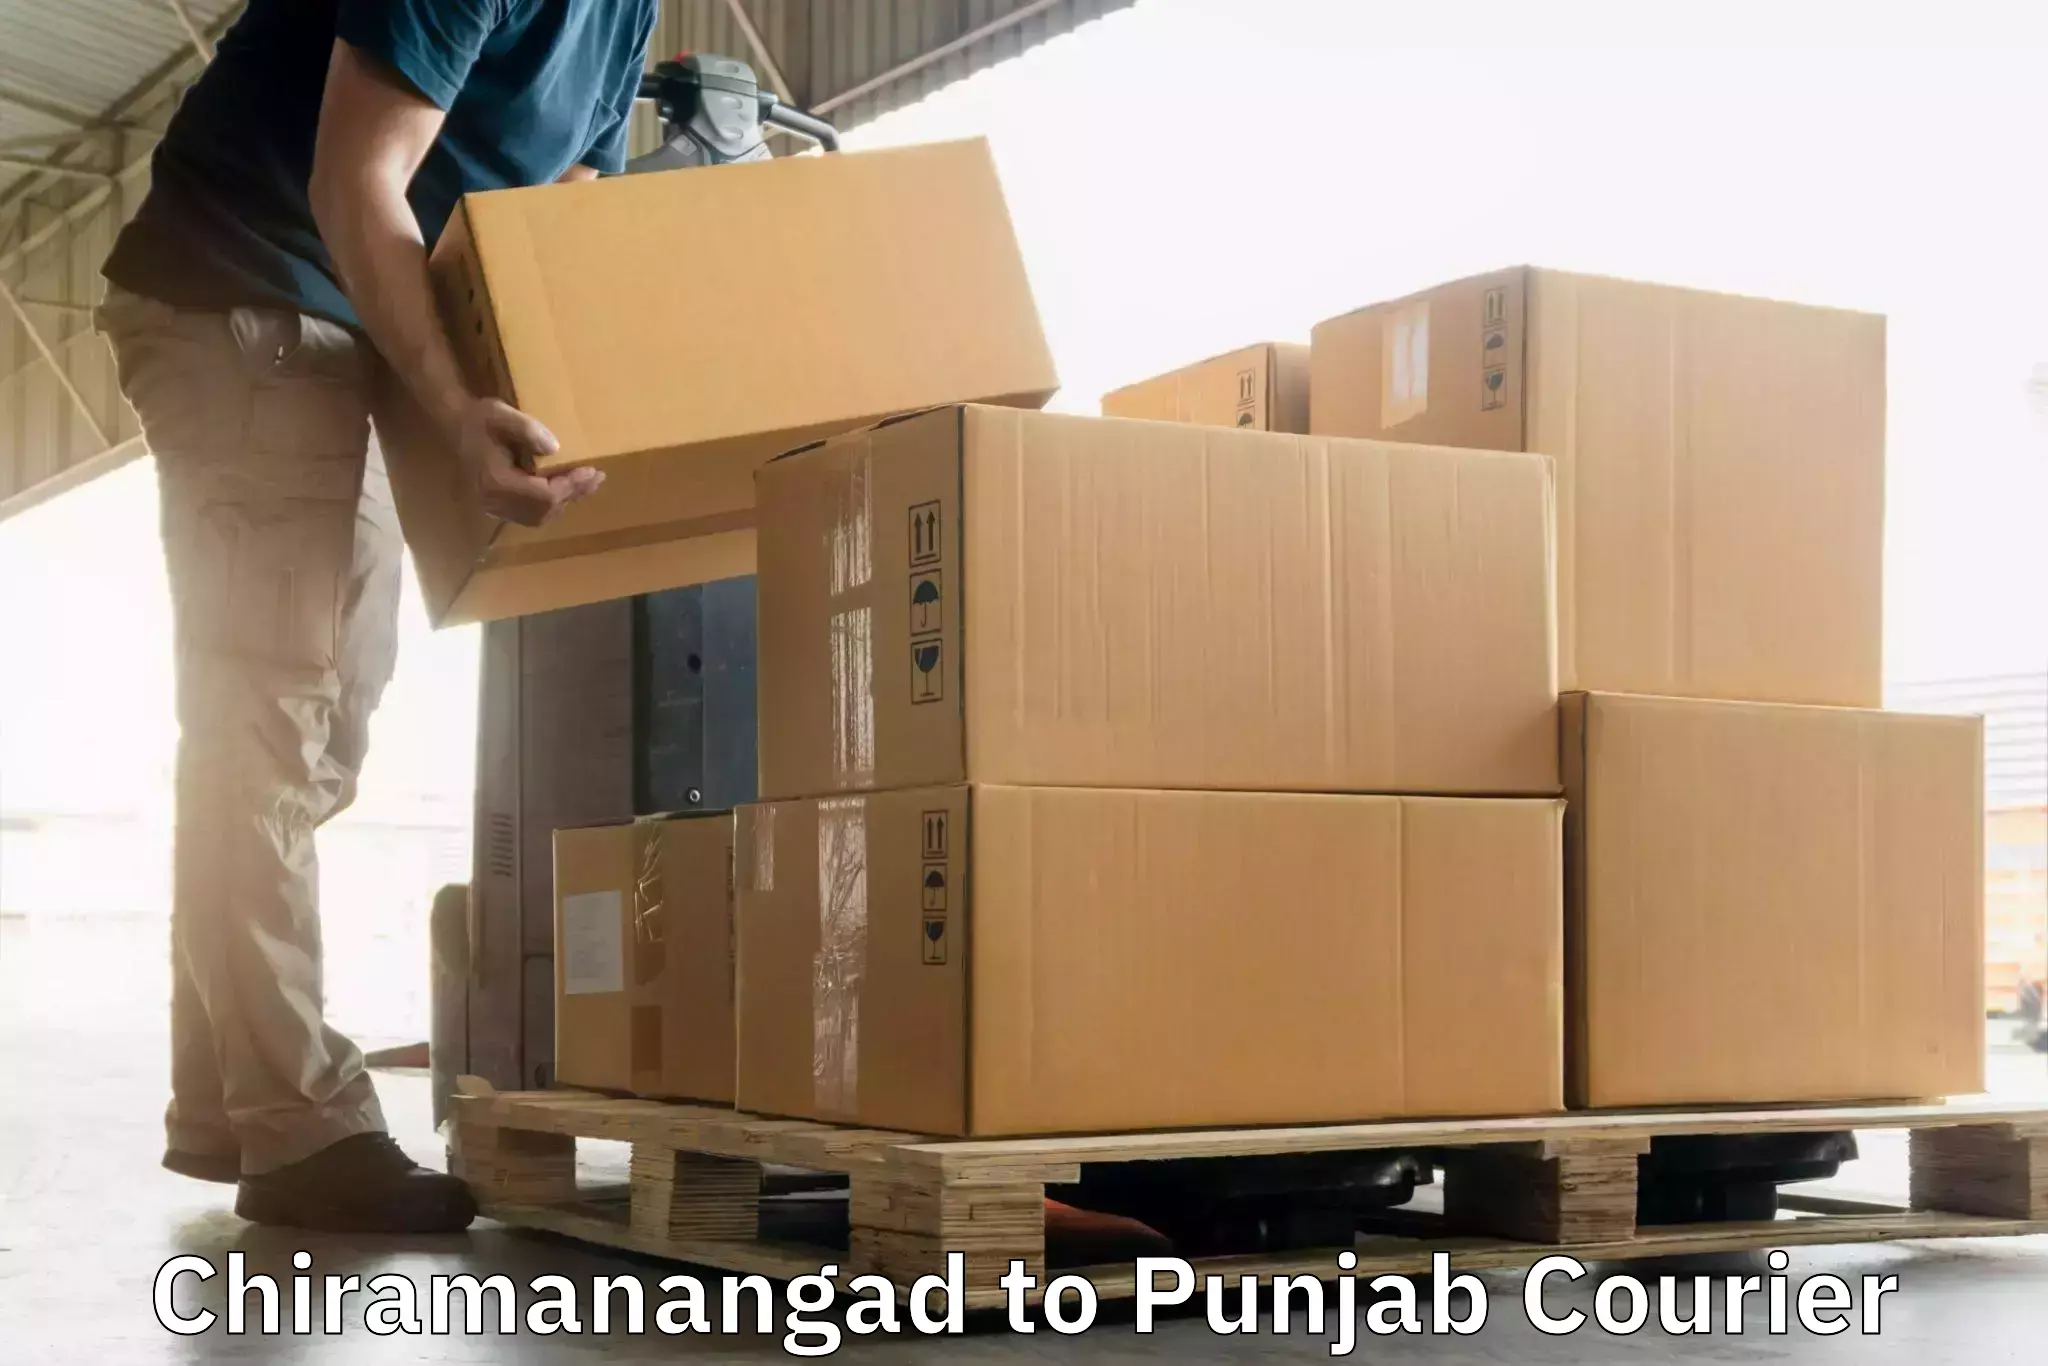 Online shipping calculator Chiramanangad to Ludhiana